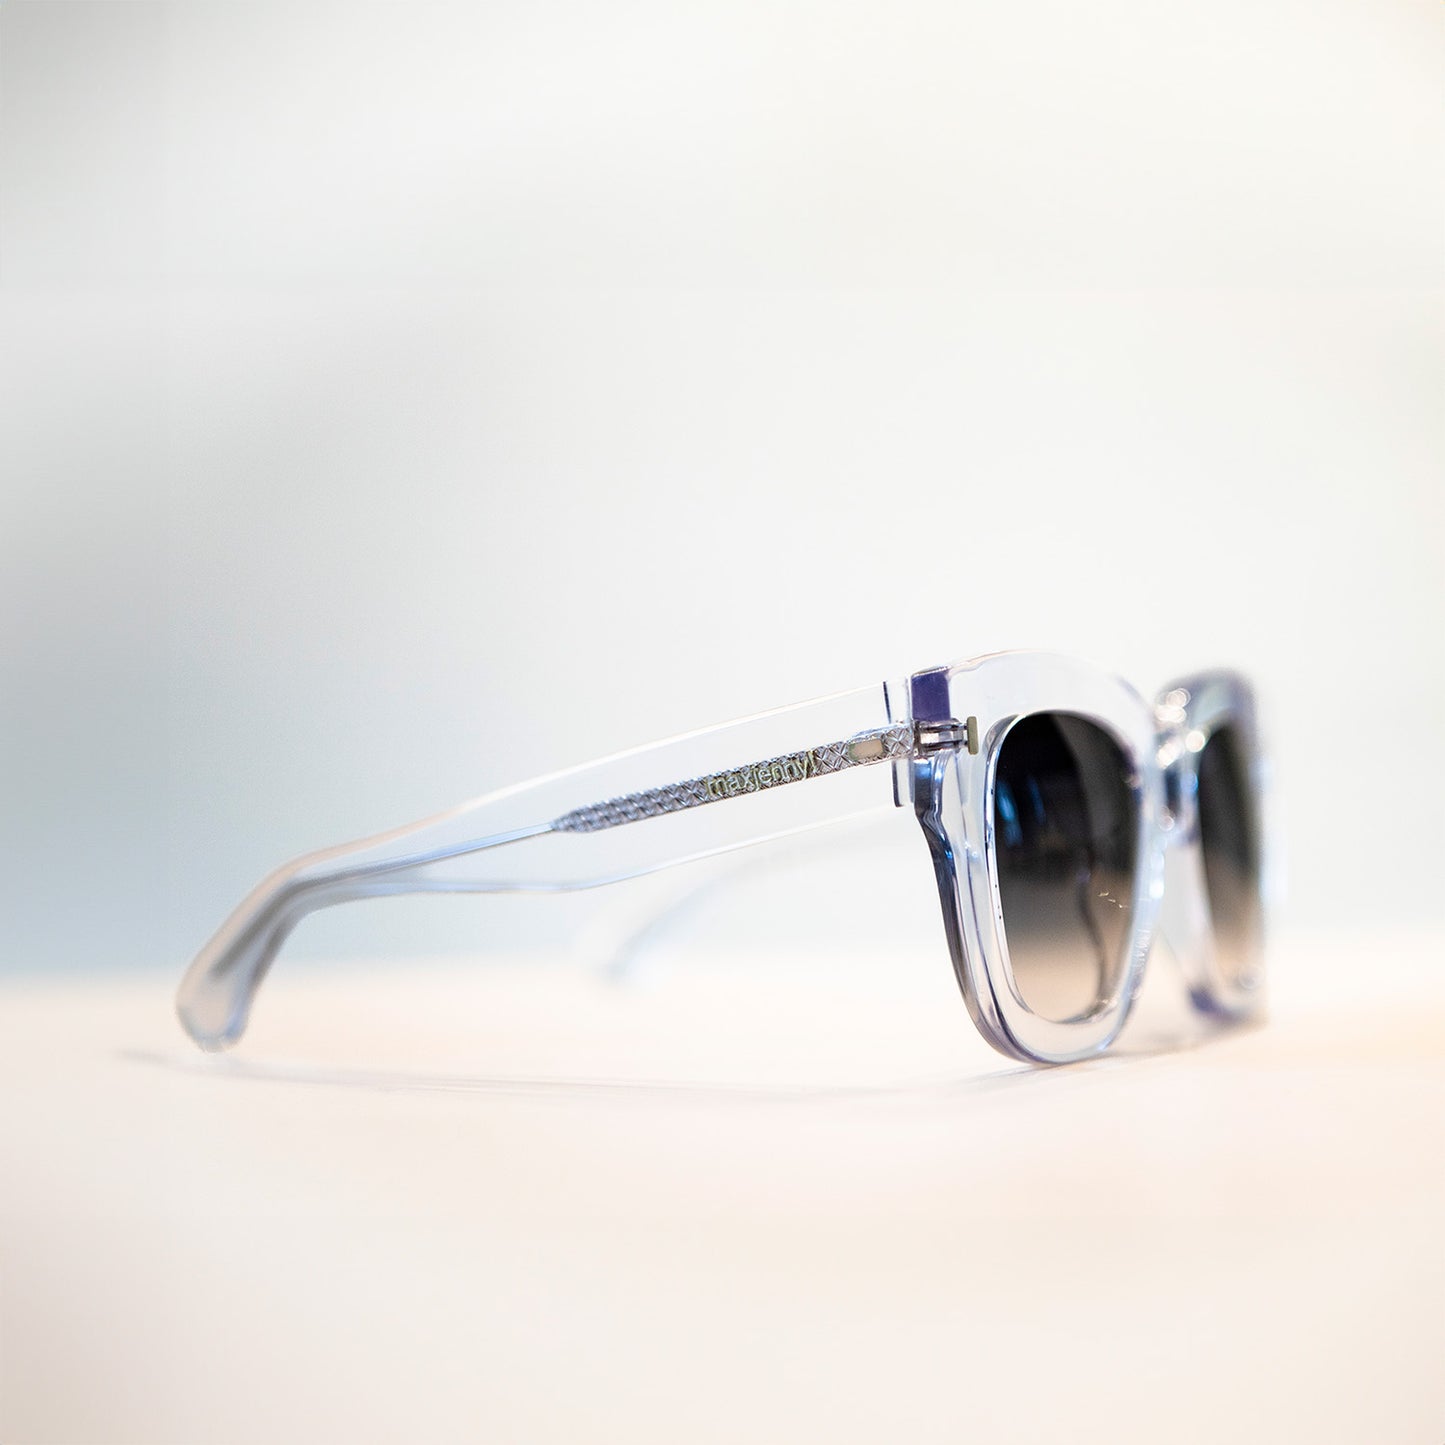 maxjenny! pflanzliche Brillen für Sonne und Optik Seethrough